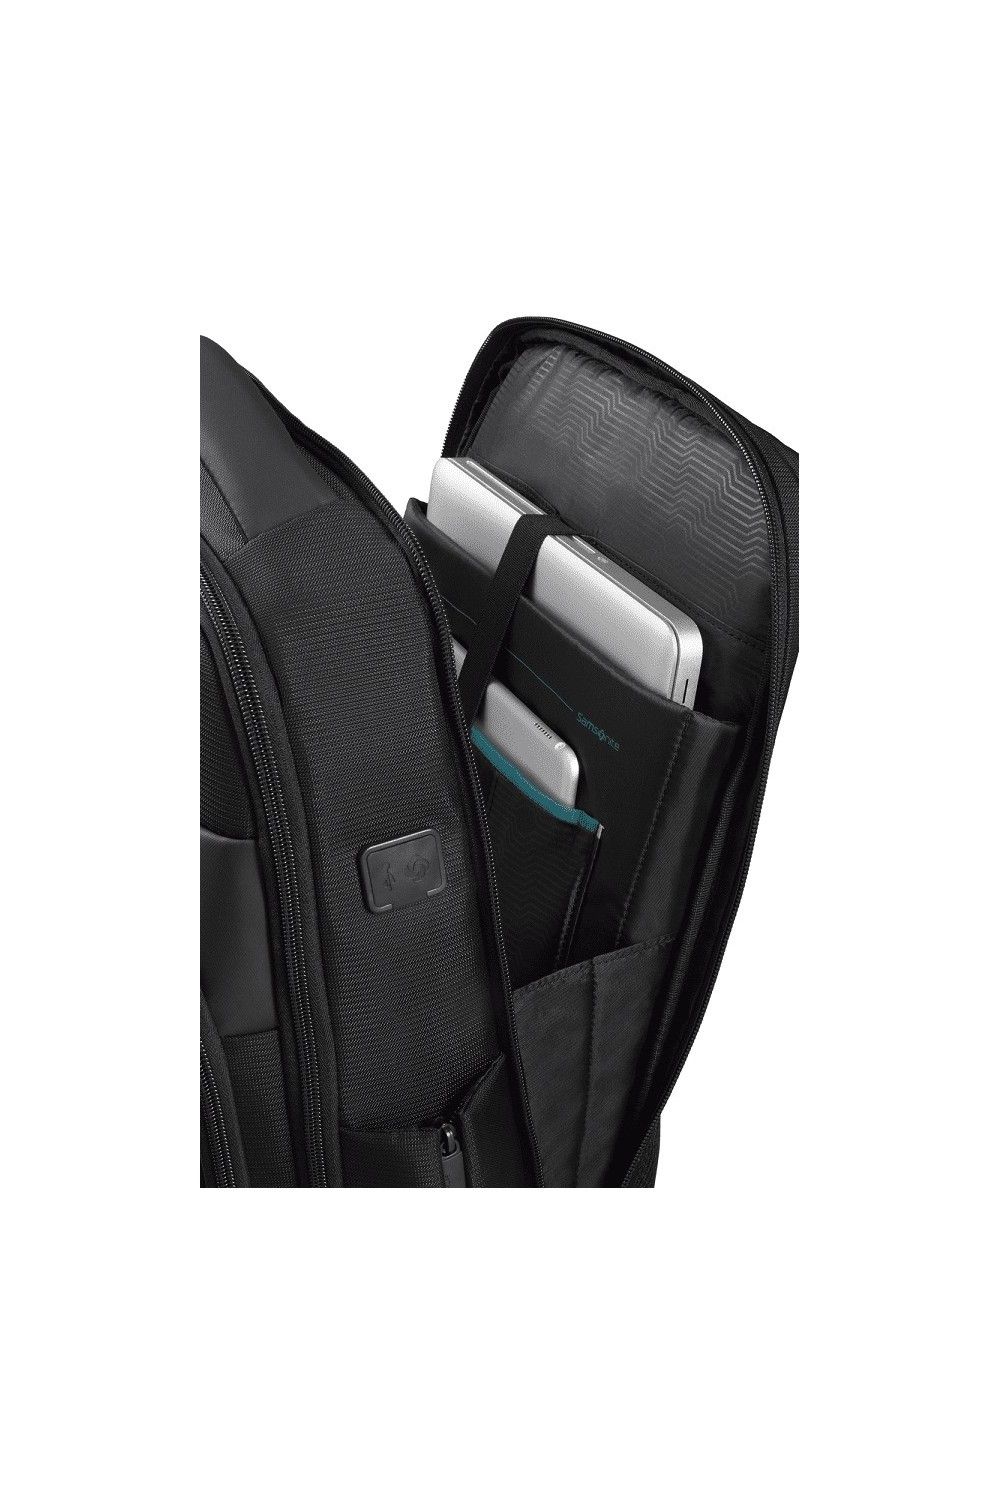 Samsonite Mysight sac à dos pour ordinateur portable 17.3 pouces